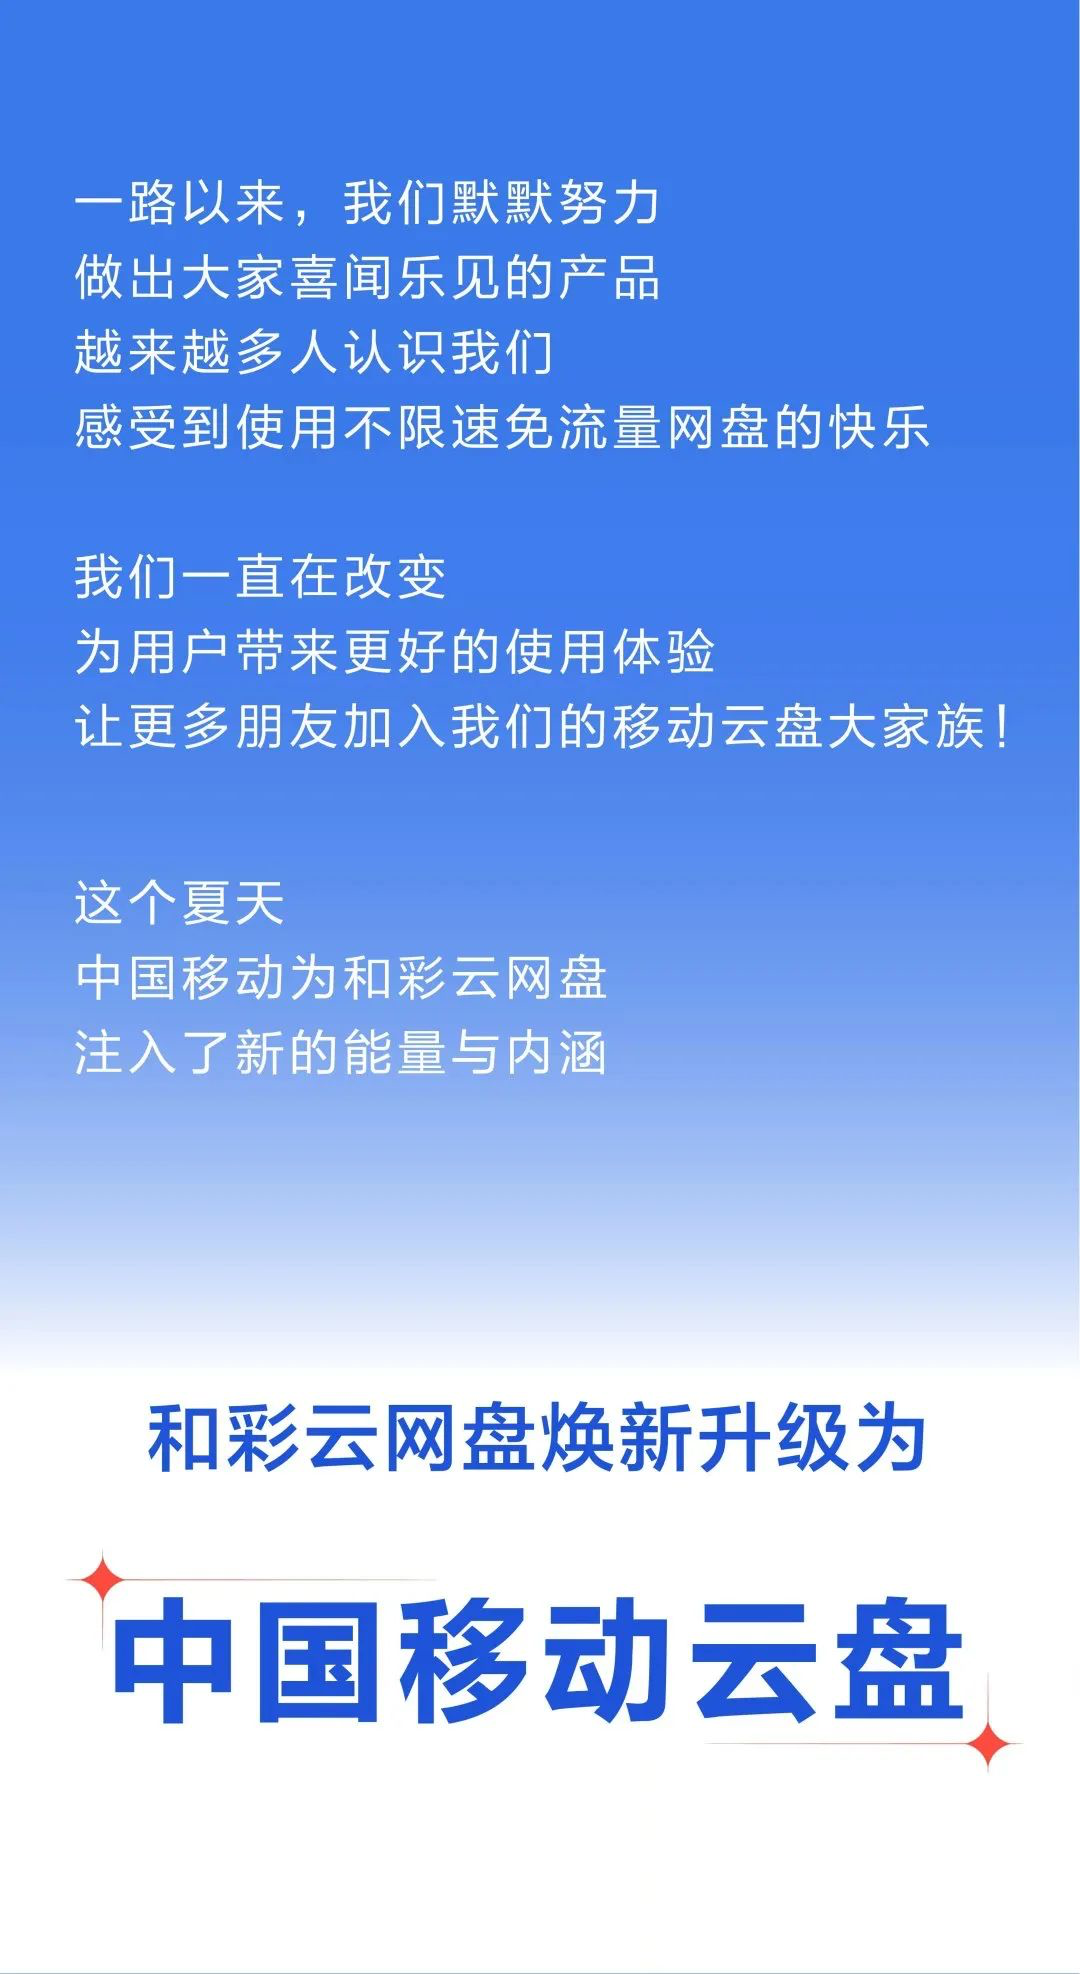 和彩云网盘更名为「中国移动云盘」：送会员季卡，上传/下载不限速